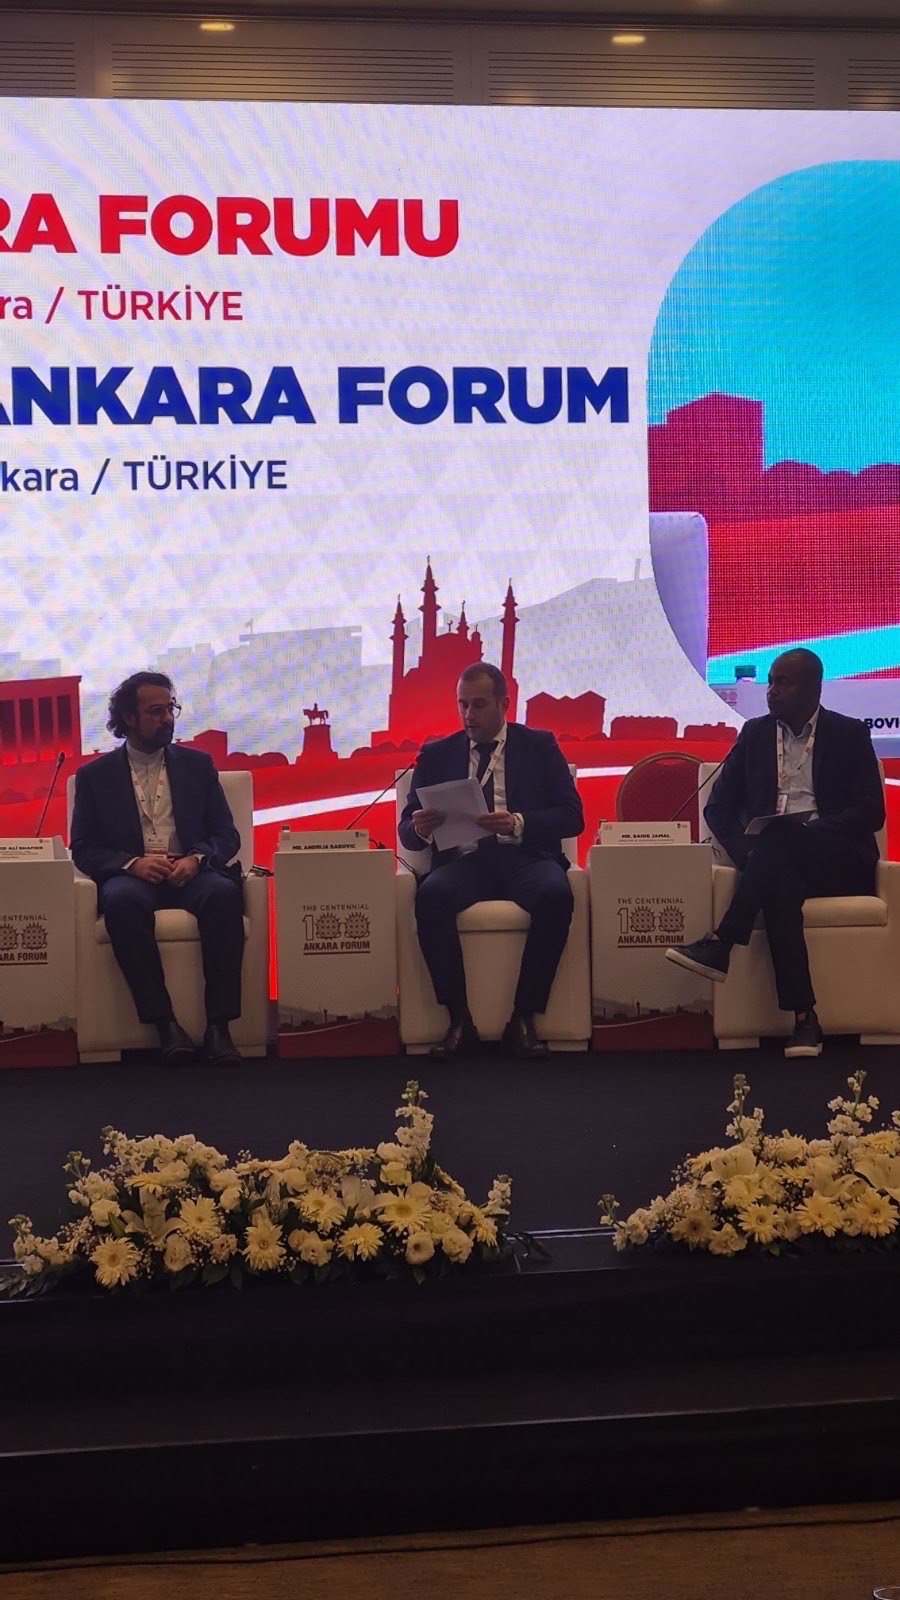 Rješenja o upravljanju otpadnim vodama predstavljena na forumu u Ankari